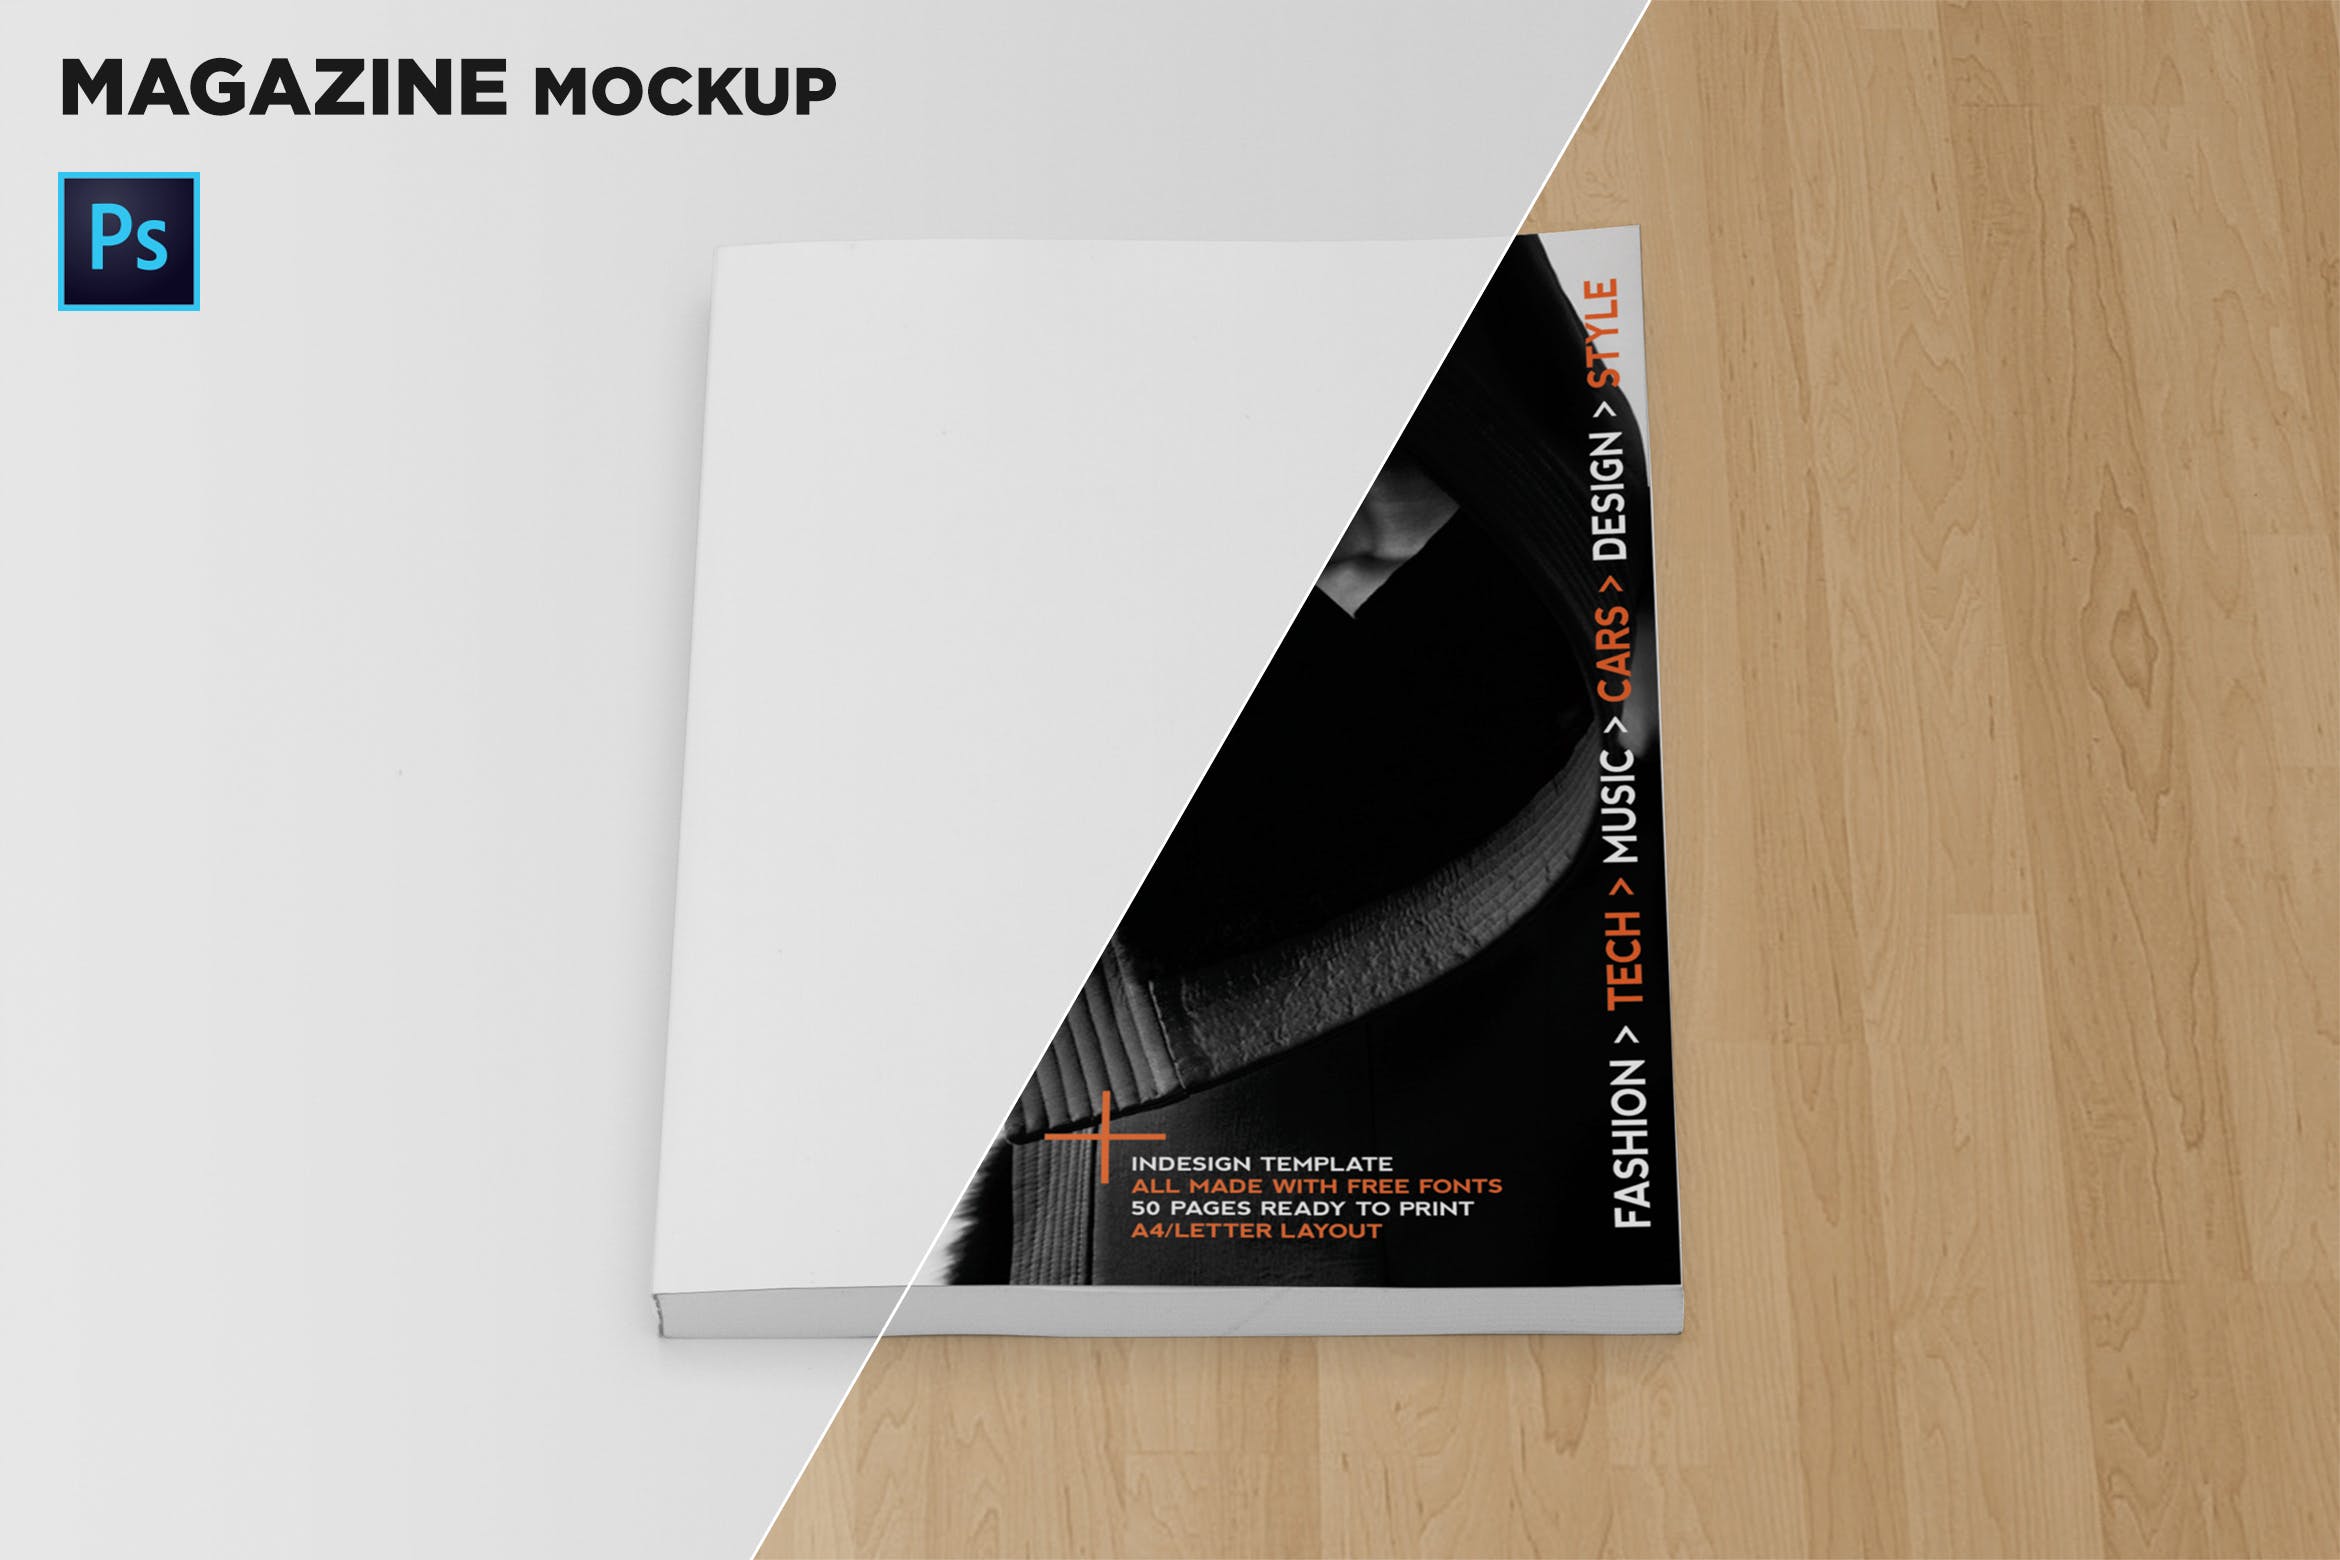 杂志封面印刷效果图样机第一素材精选模板 Magazine Cover Mockup插图